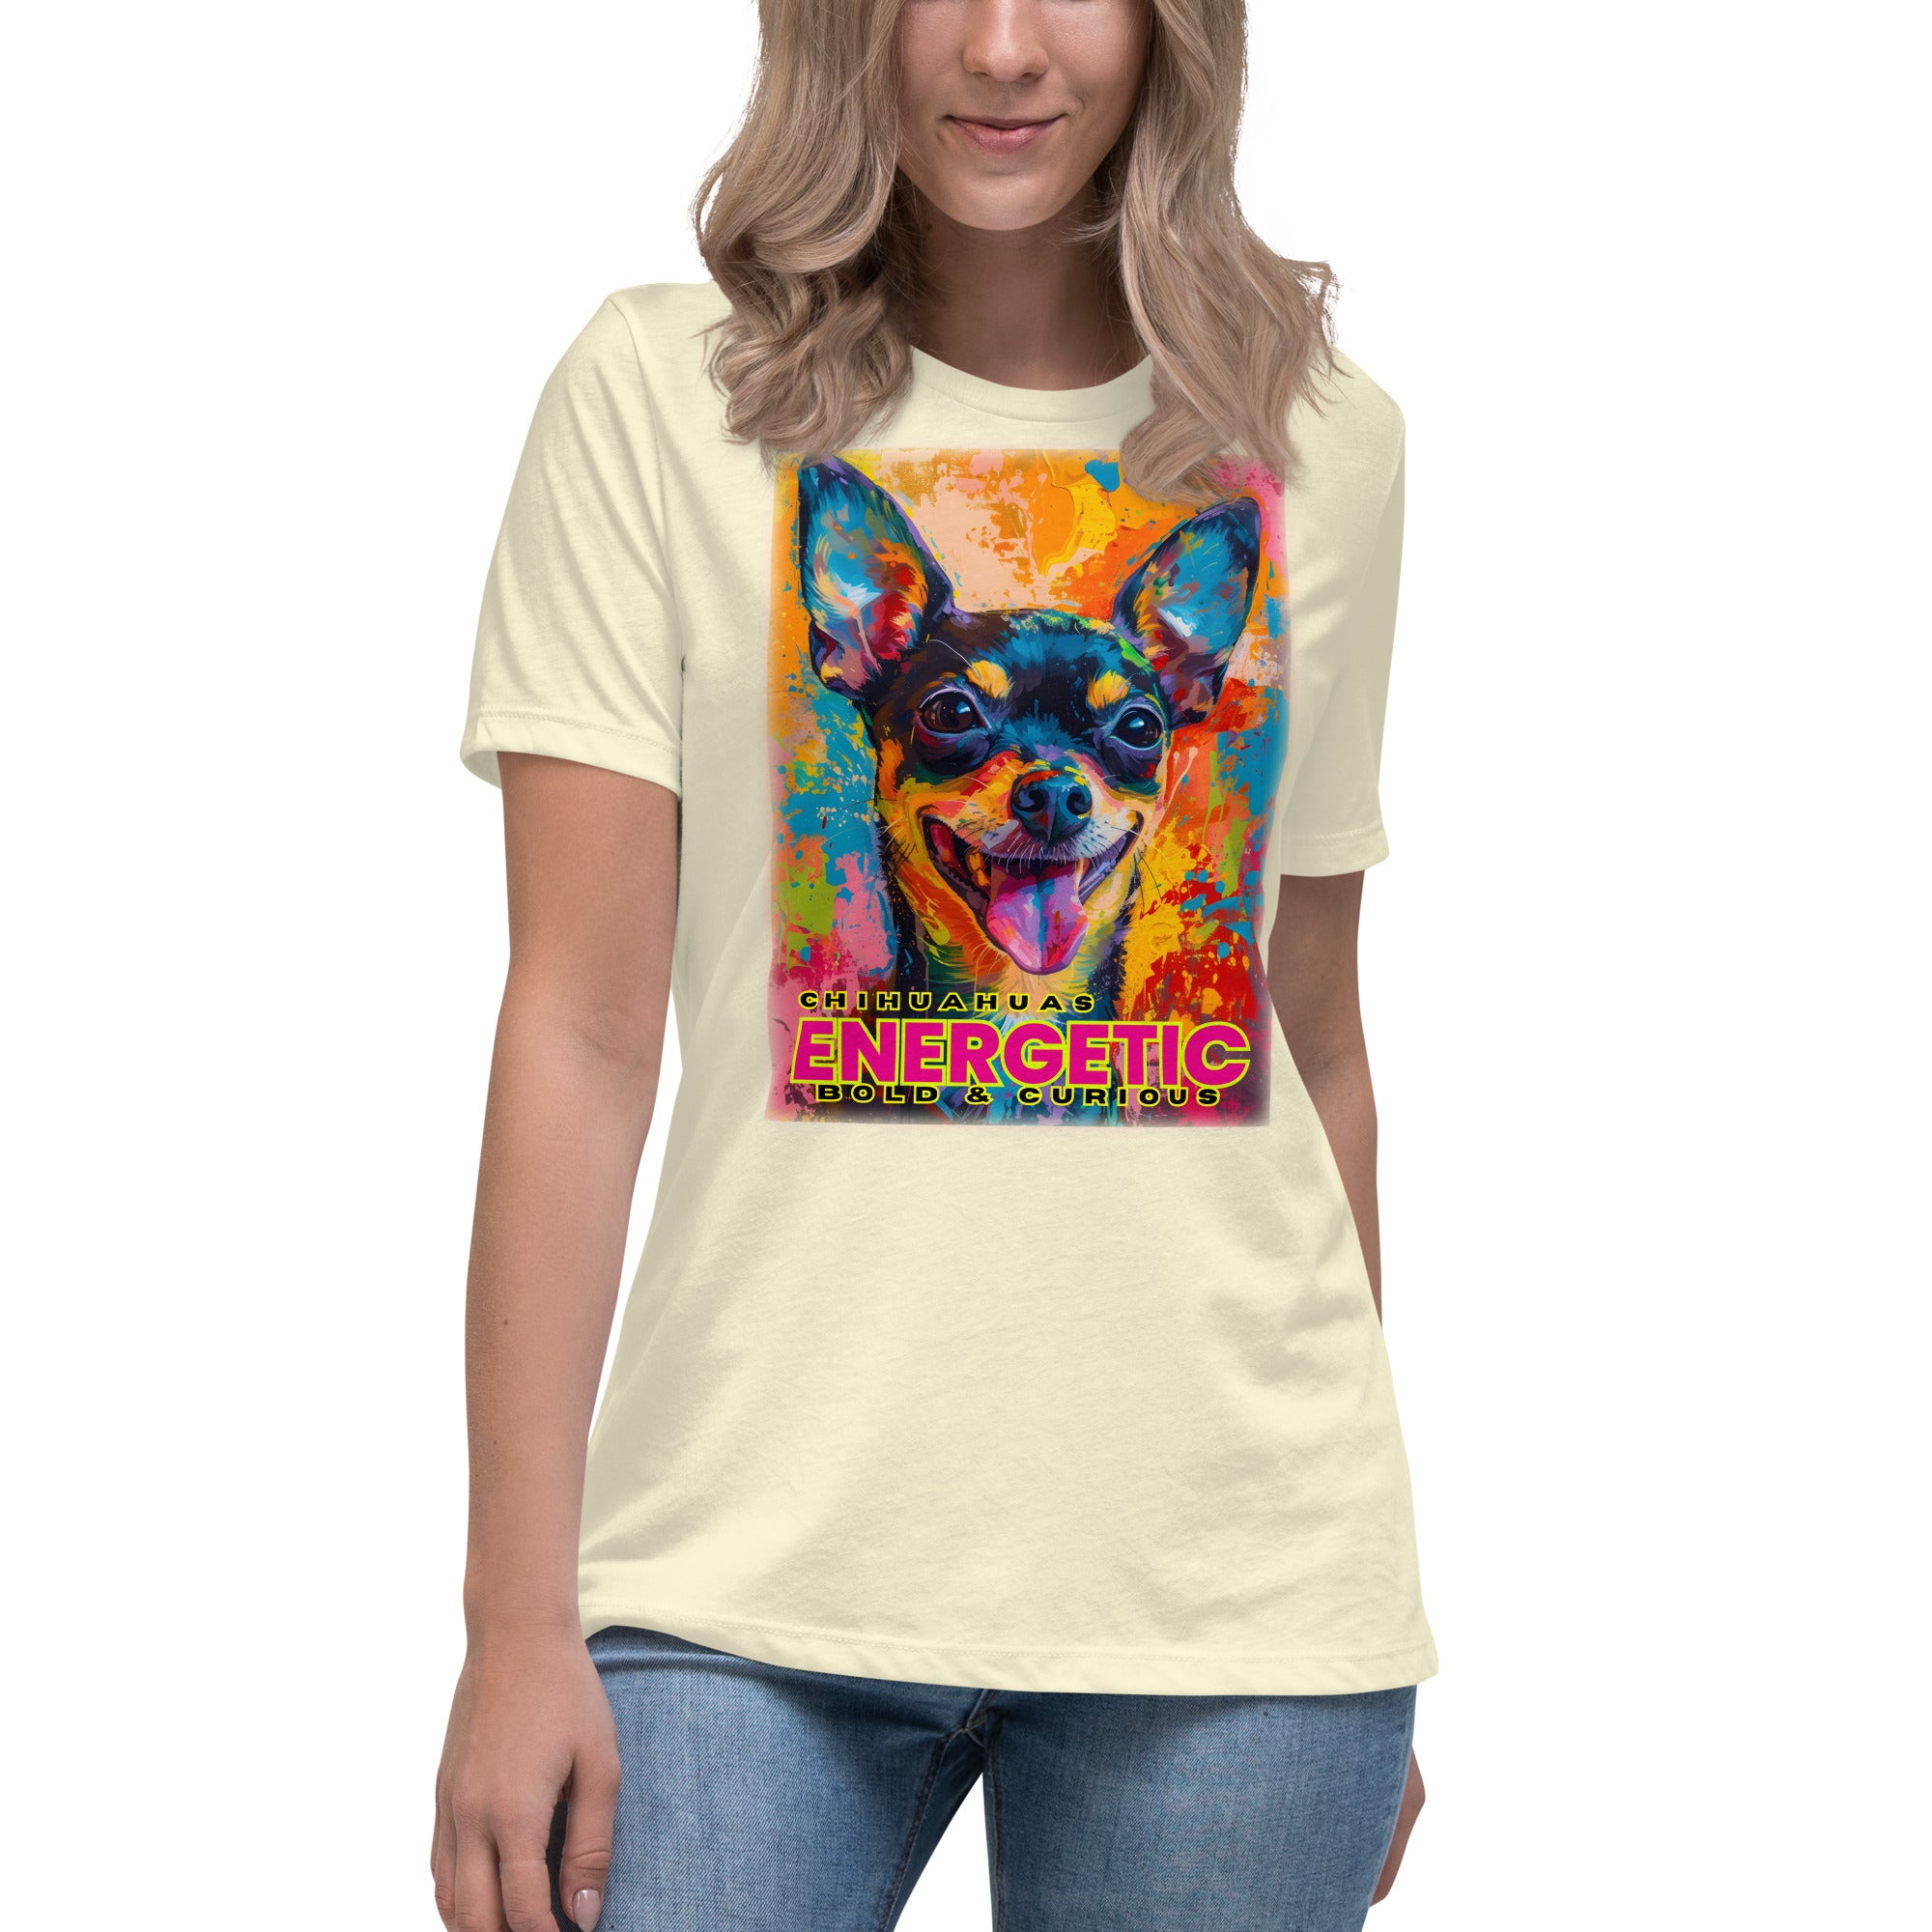 Chihuahua Women's Relaxed T-Shirt